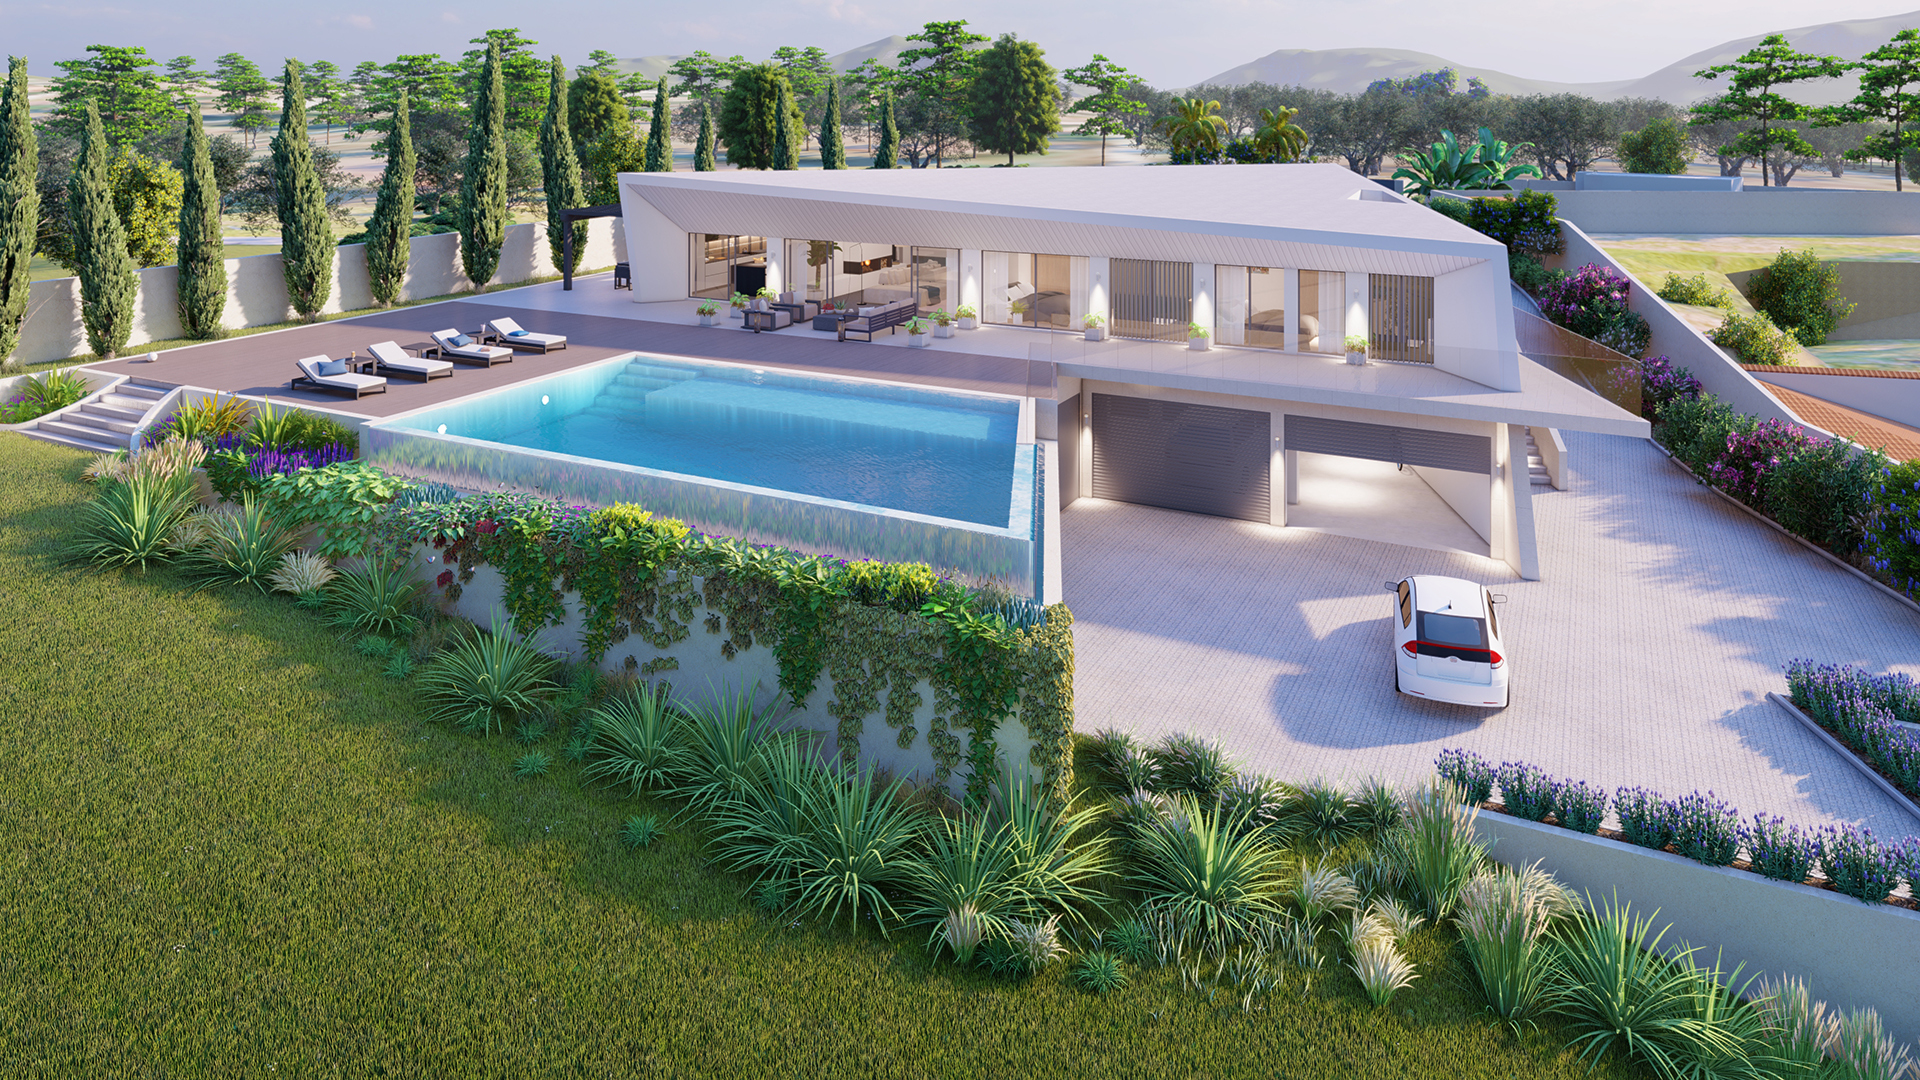 EM CONSTRUÇÃO - Oportunidade única de comprar uma moradia moderna, Faro, Silves | PPP2198 Esta é uma oportunidade única de comprar uma villa ultra-moderna com 4 quartos